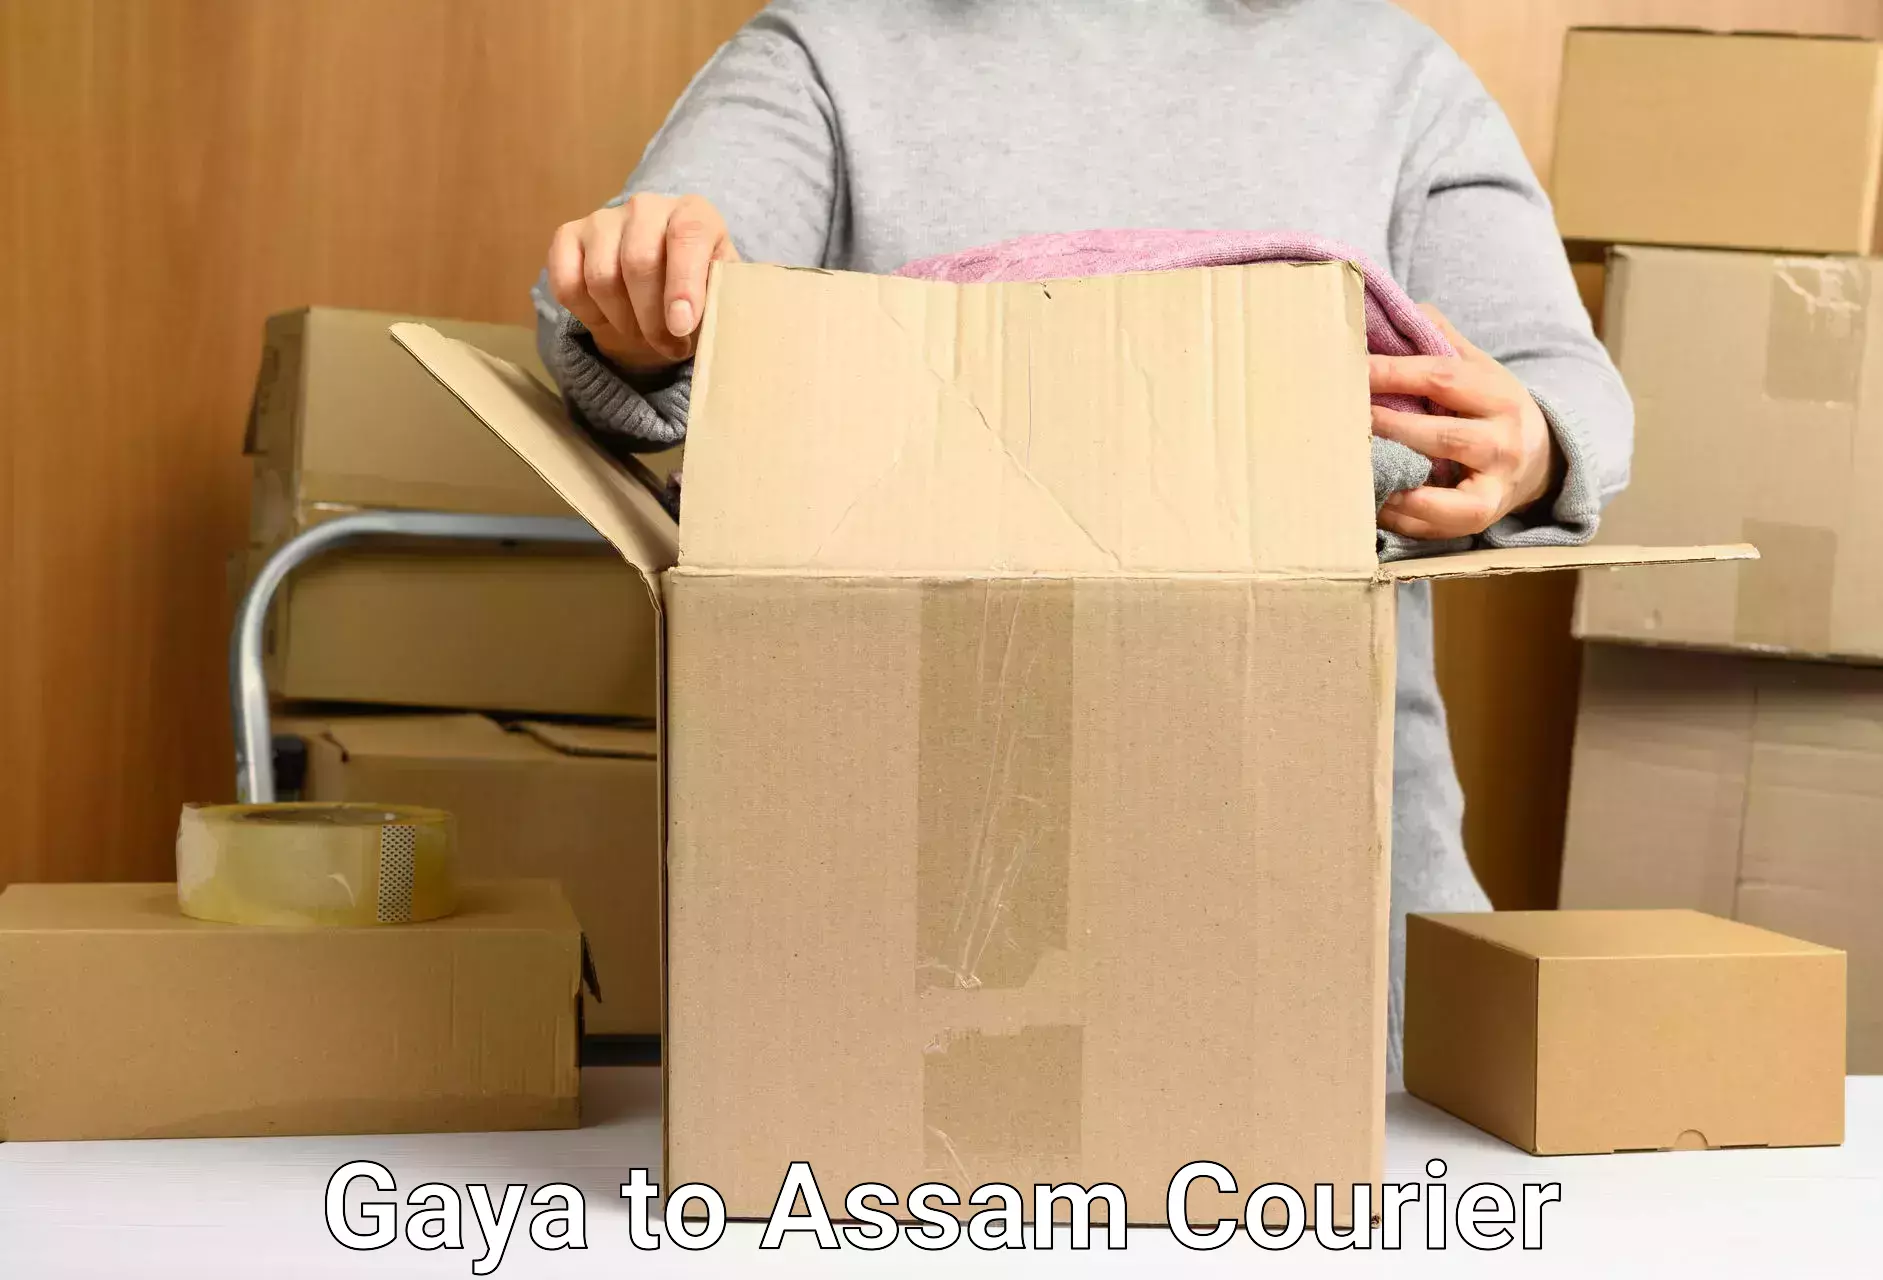 Customer-centric shipping Gaya to Assam